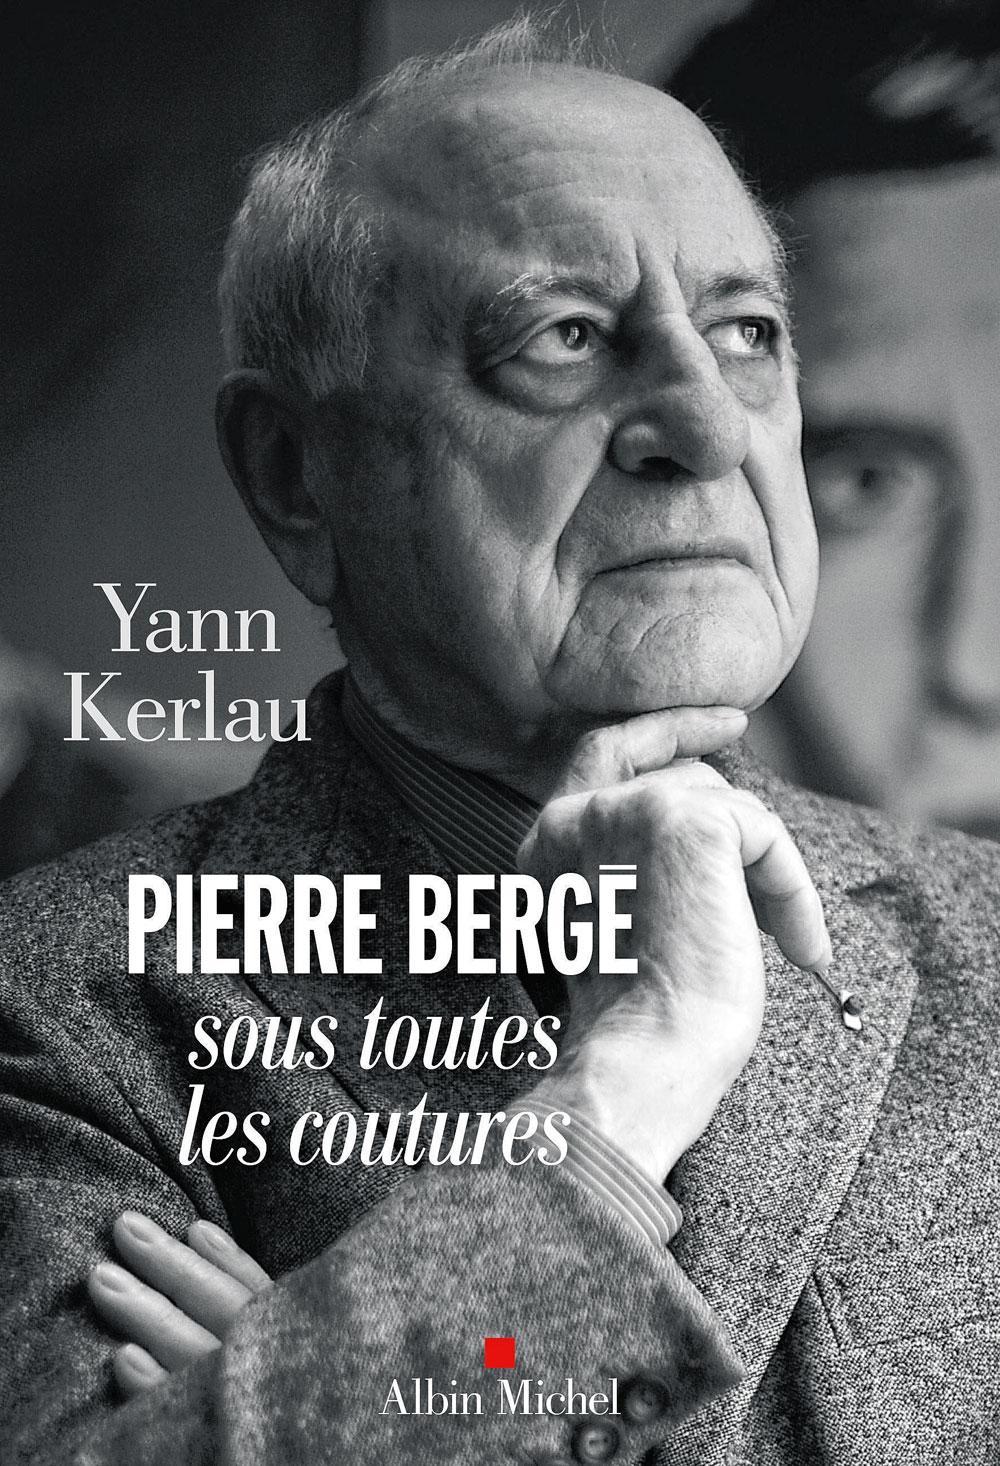 Yann Kerlau